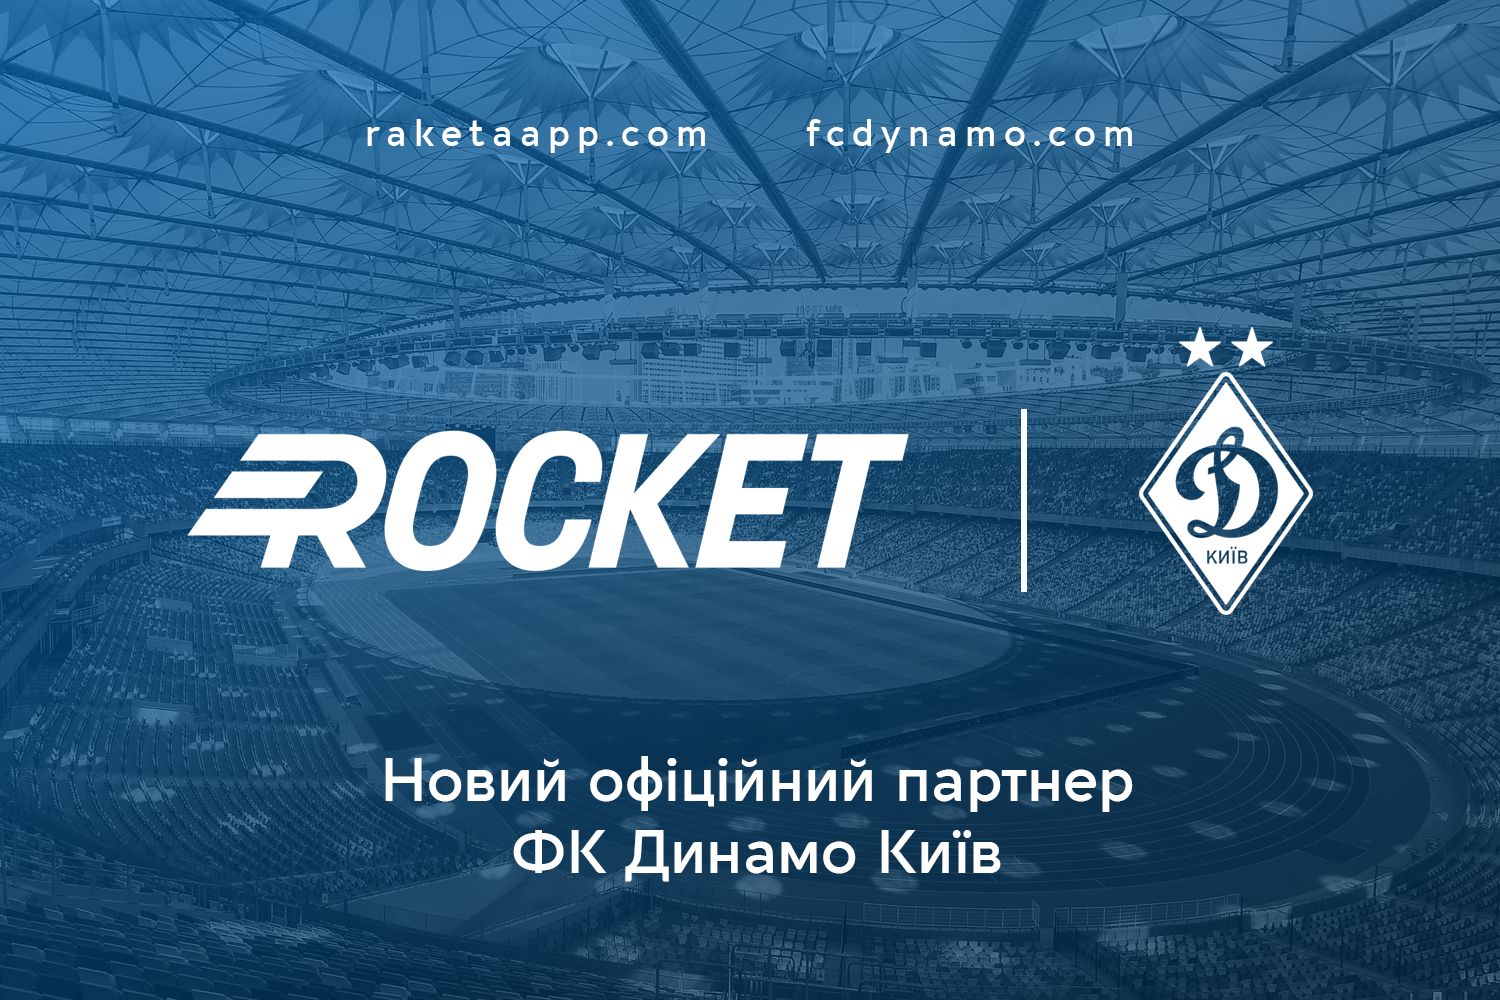 Rocket – FC Dynamo Kyiv sponsor